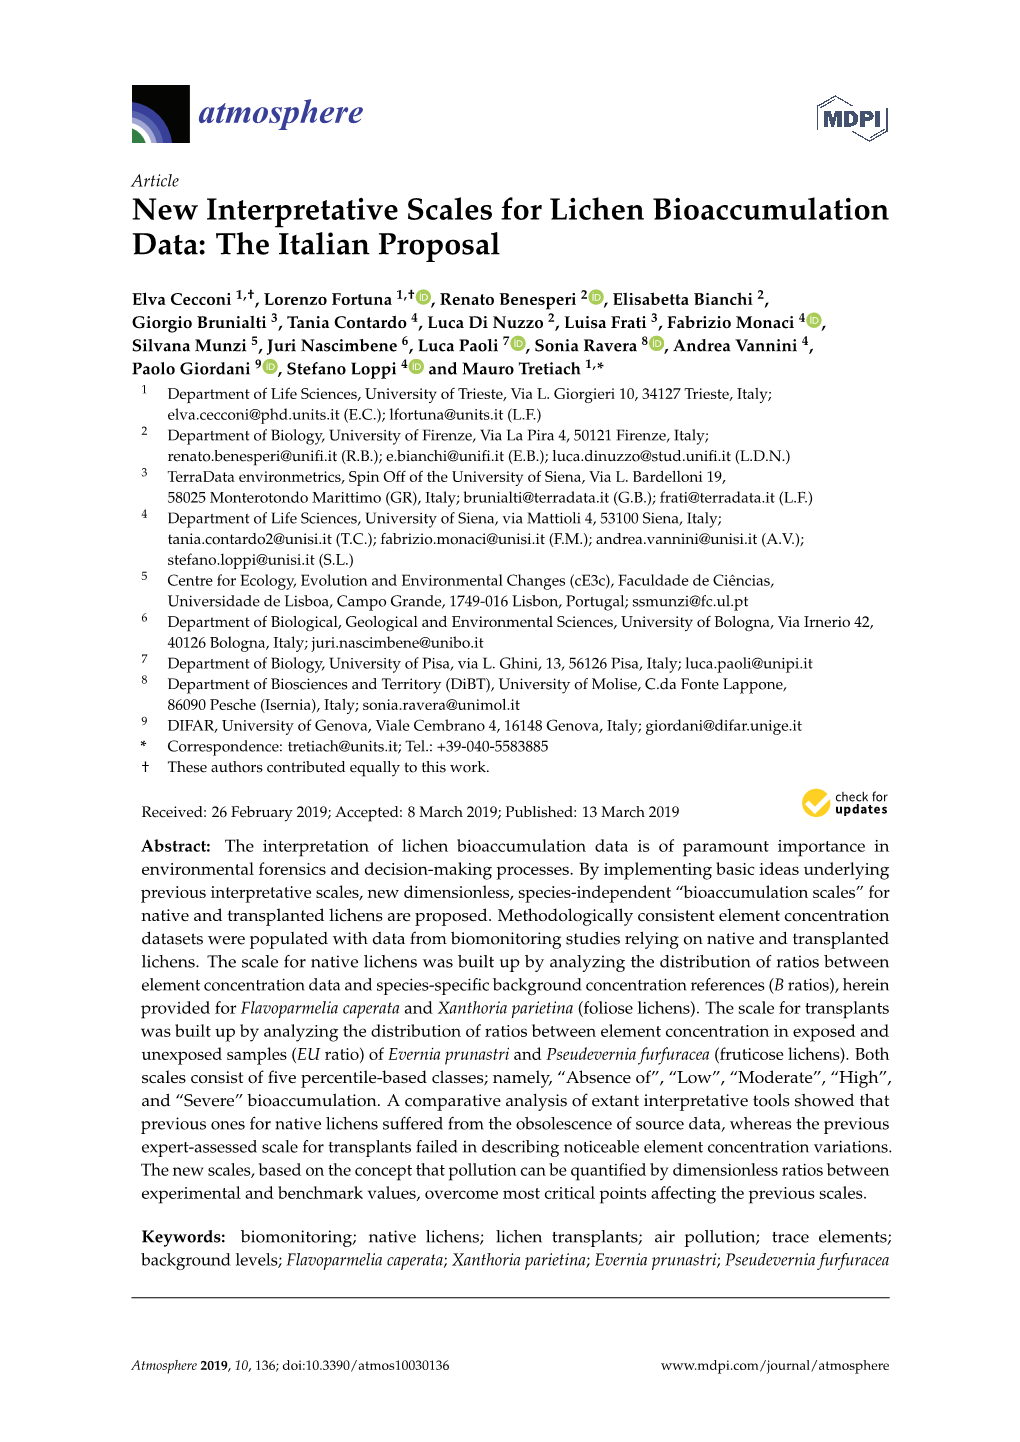 New Interpretative Scales for Lichen Bioaccumulation Data: the Italian Proposal